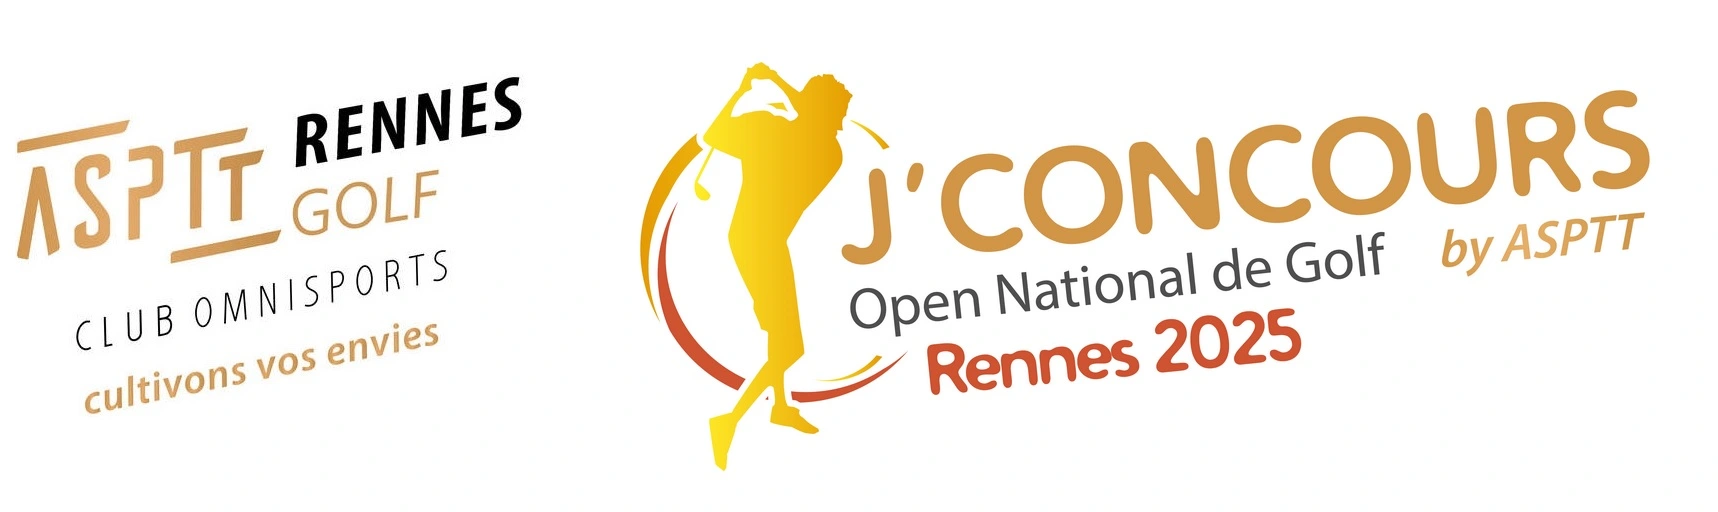 Open National de Golf - Rennes 2025 - by ASPTT